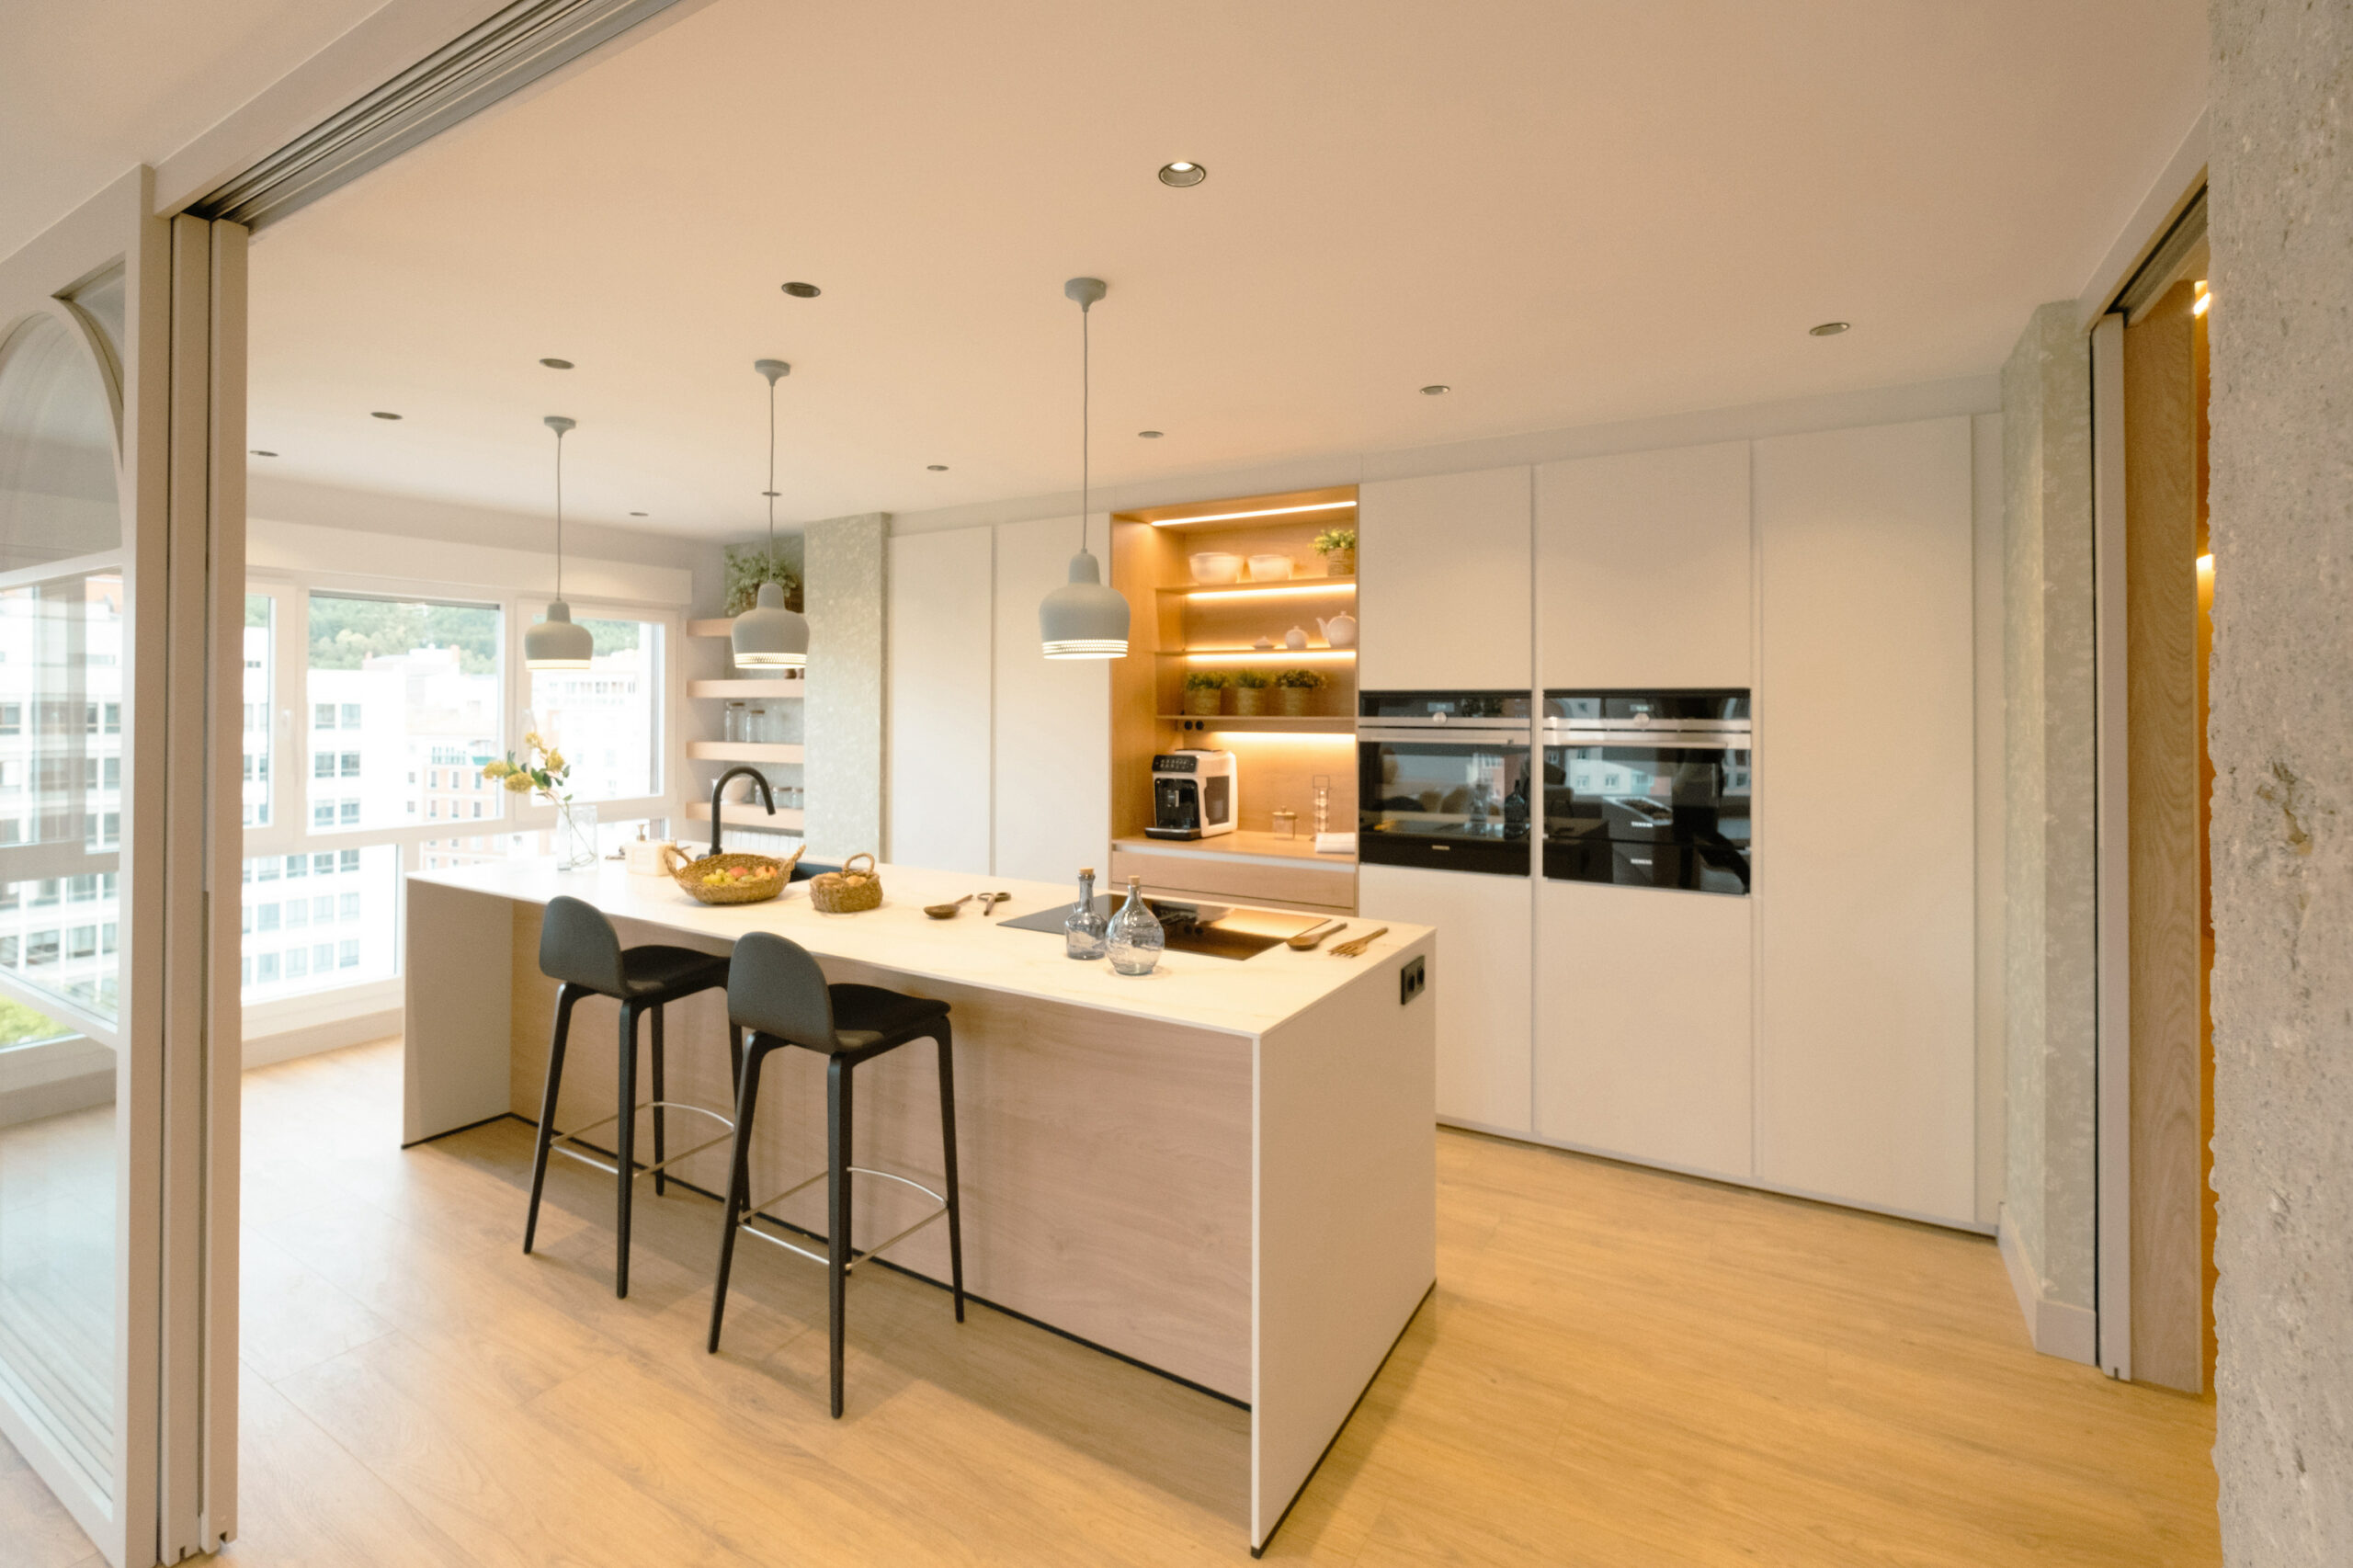 piso totalmente reformado por johntelobusca y cocina moderna abierta cjr